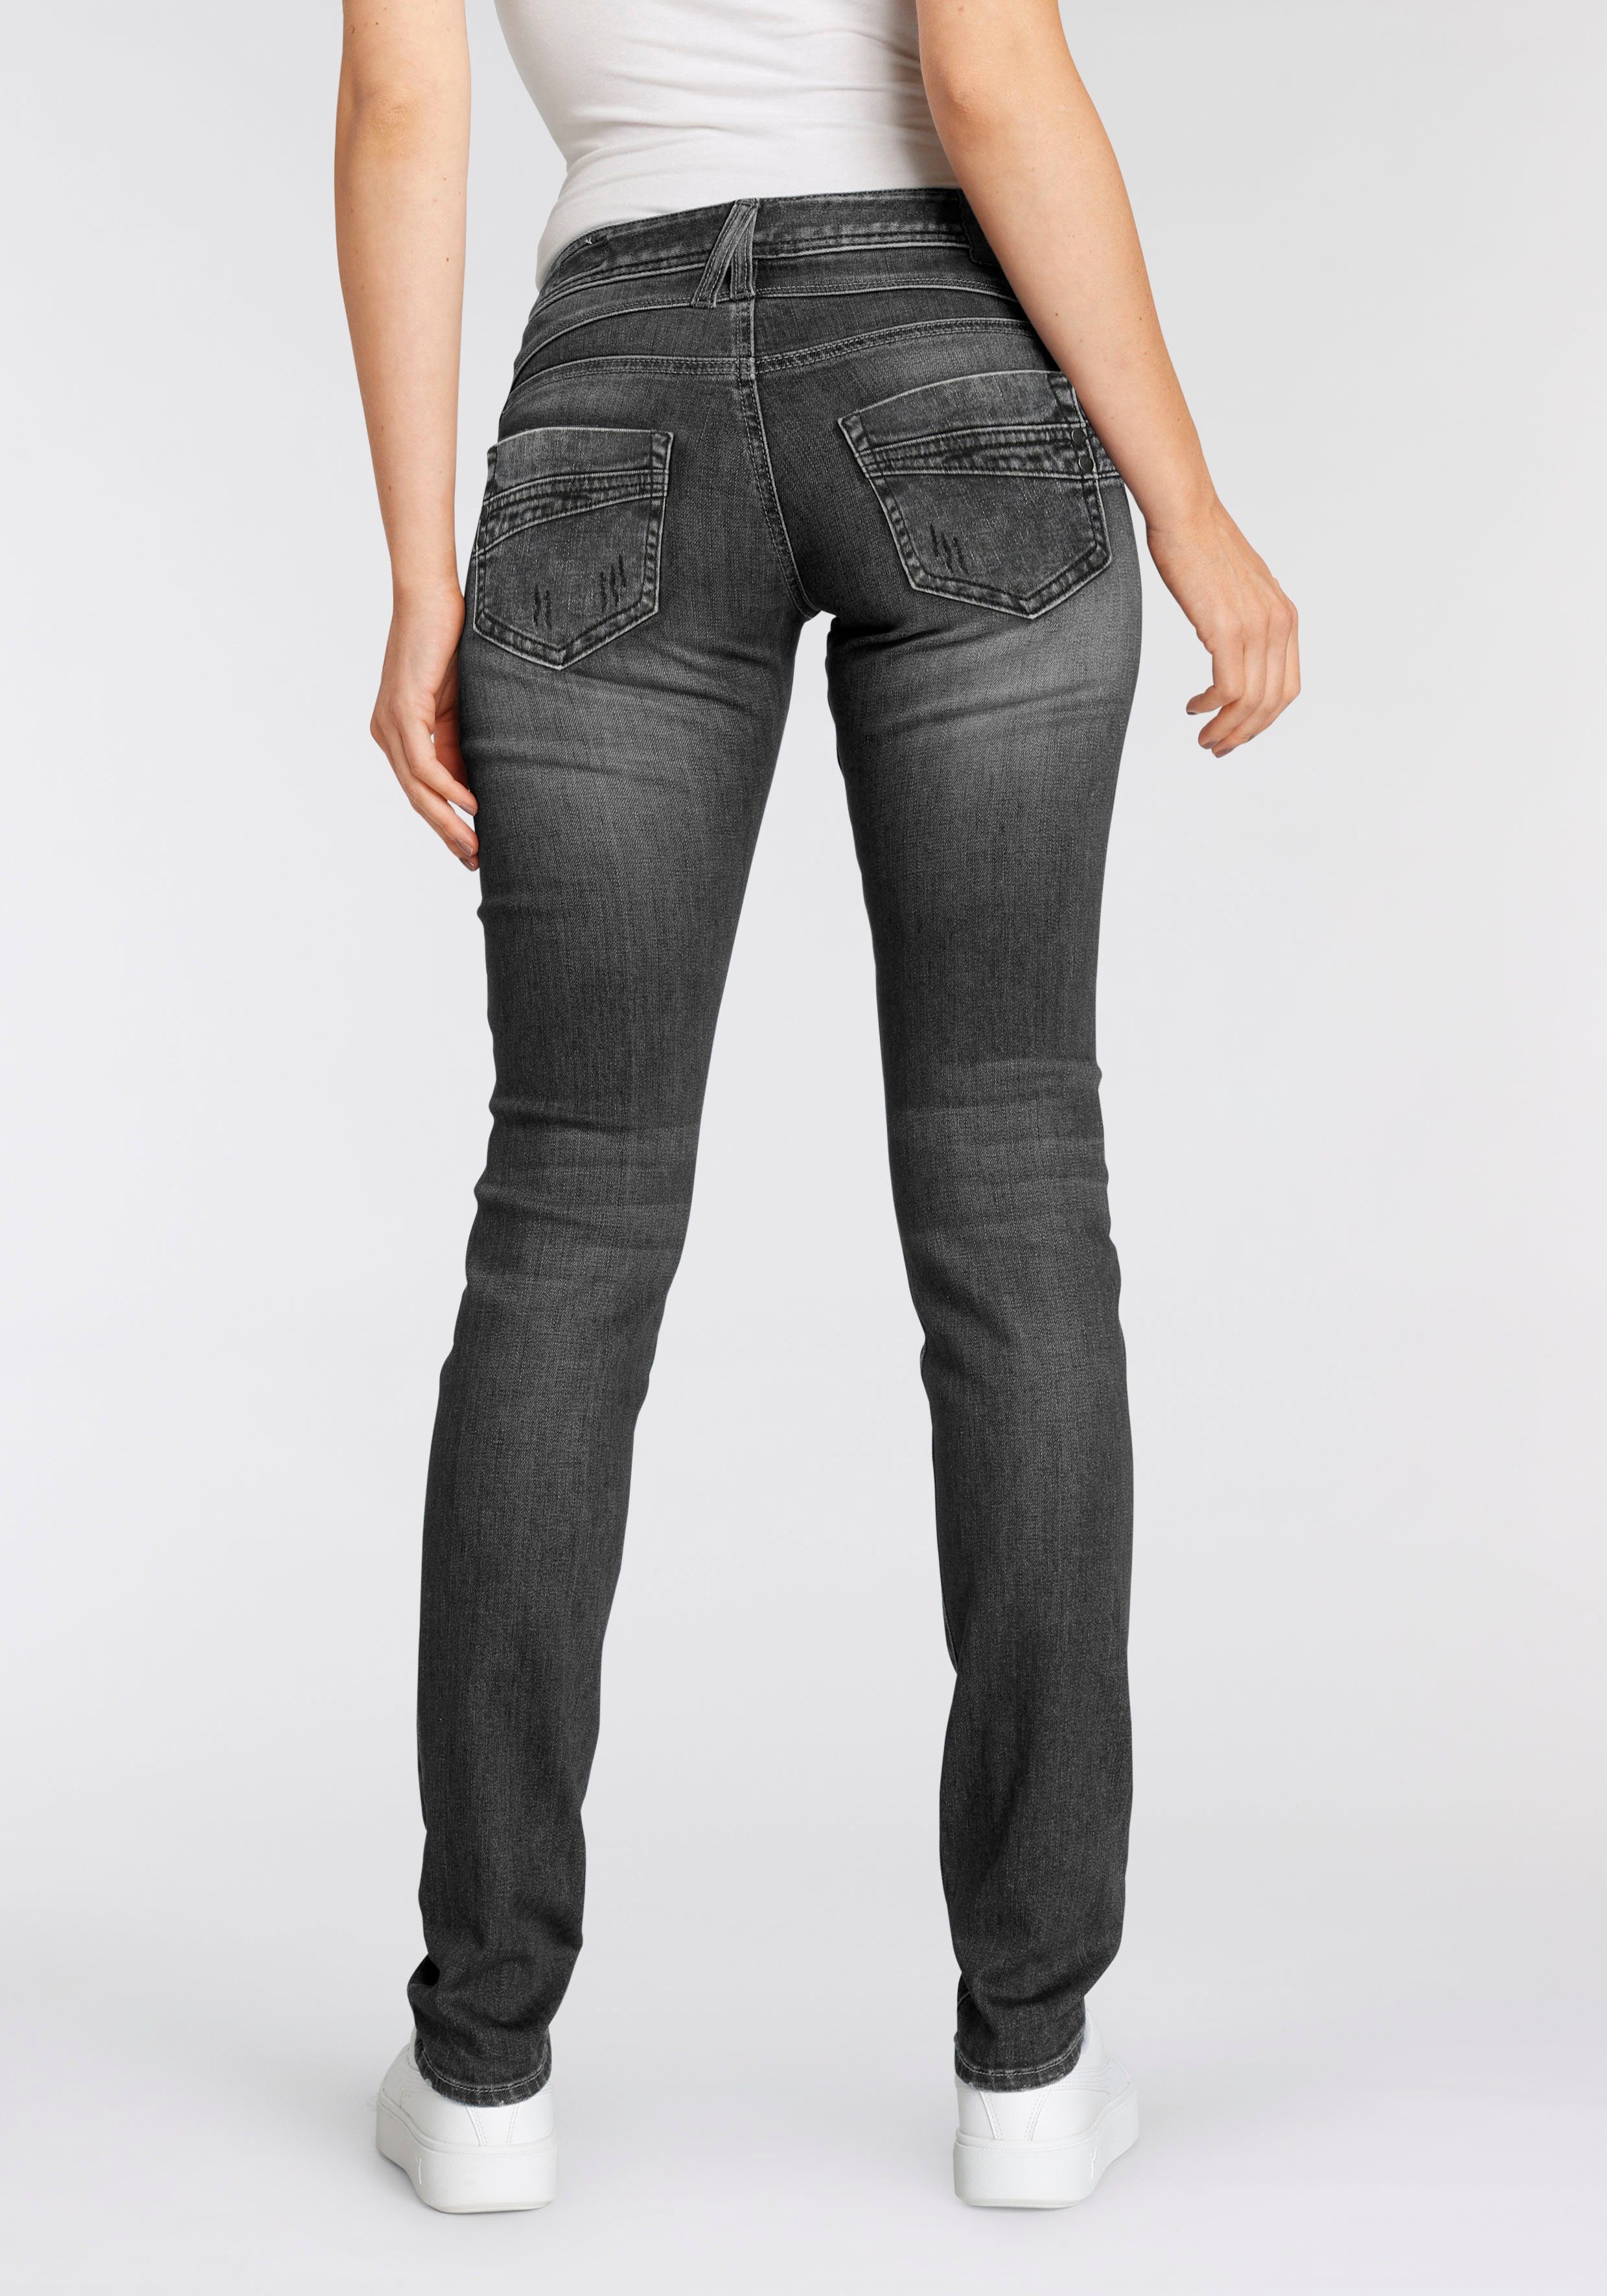 Damen Jeans Herrlicher Slim-fit-Jeans PIPER ORGANIC DENIM umweltfreundlich dank Kitotex Technologie